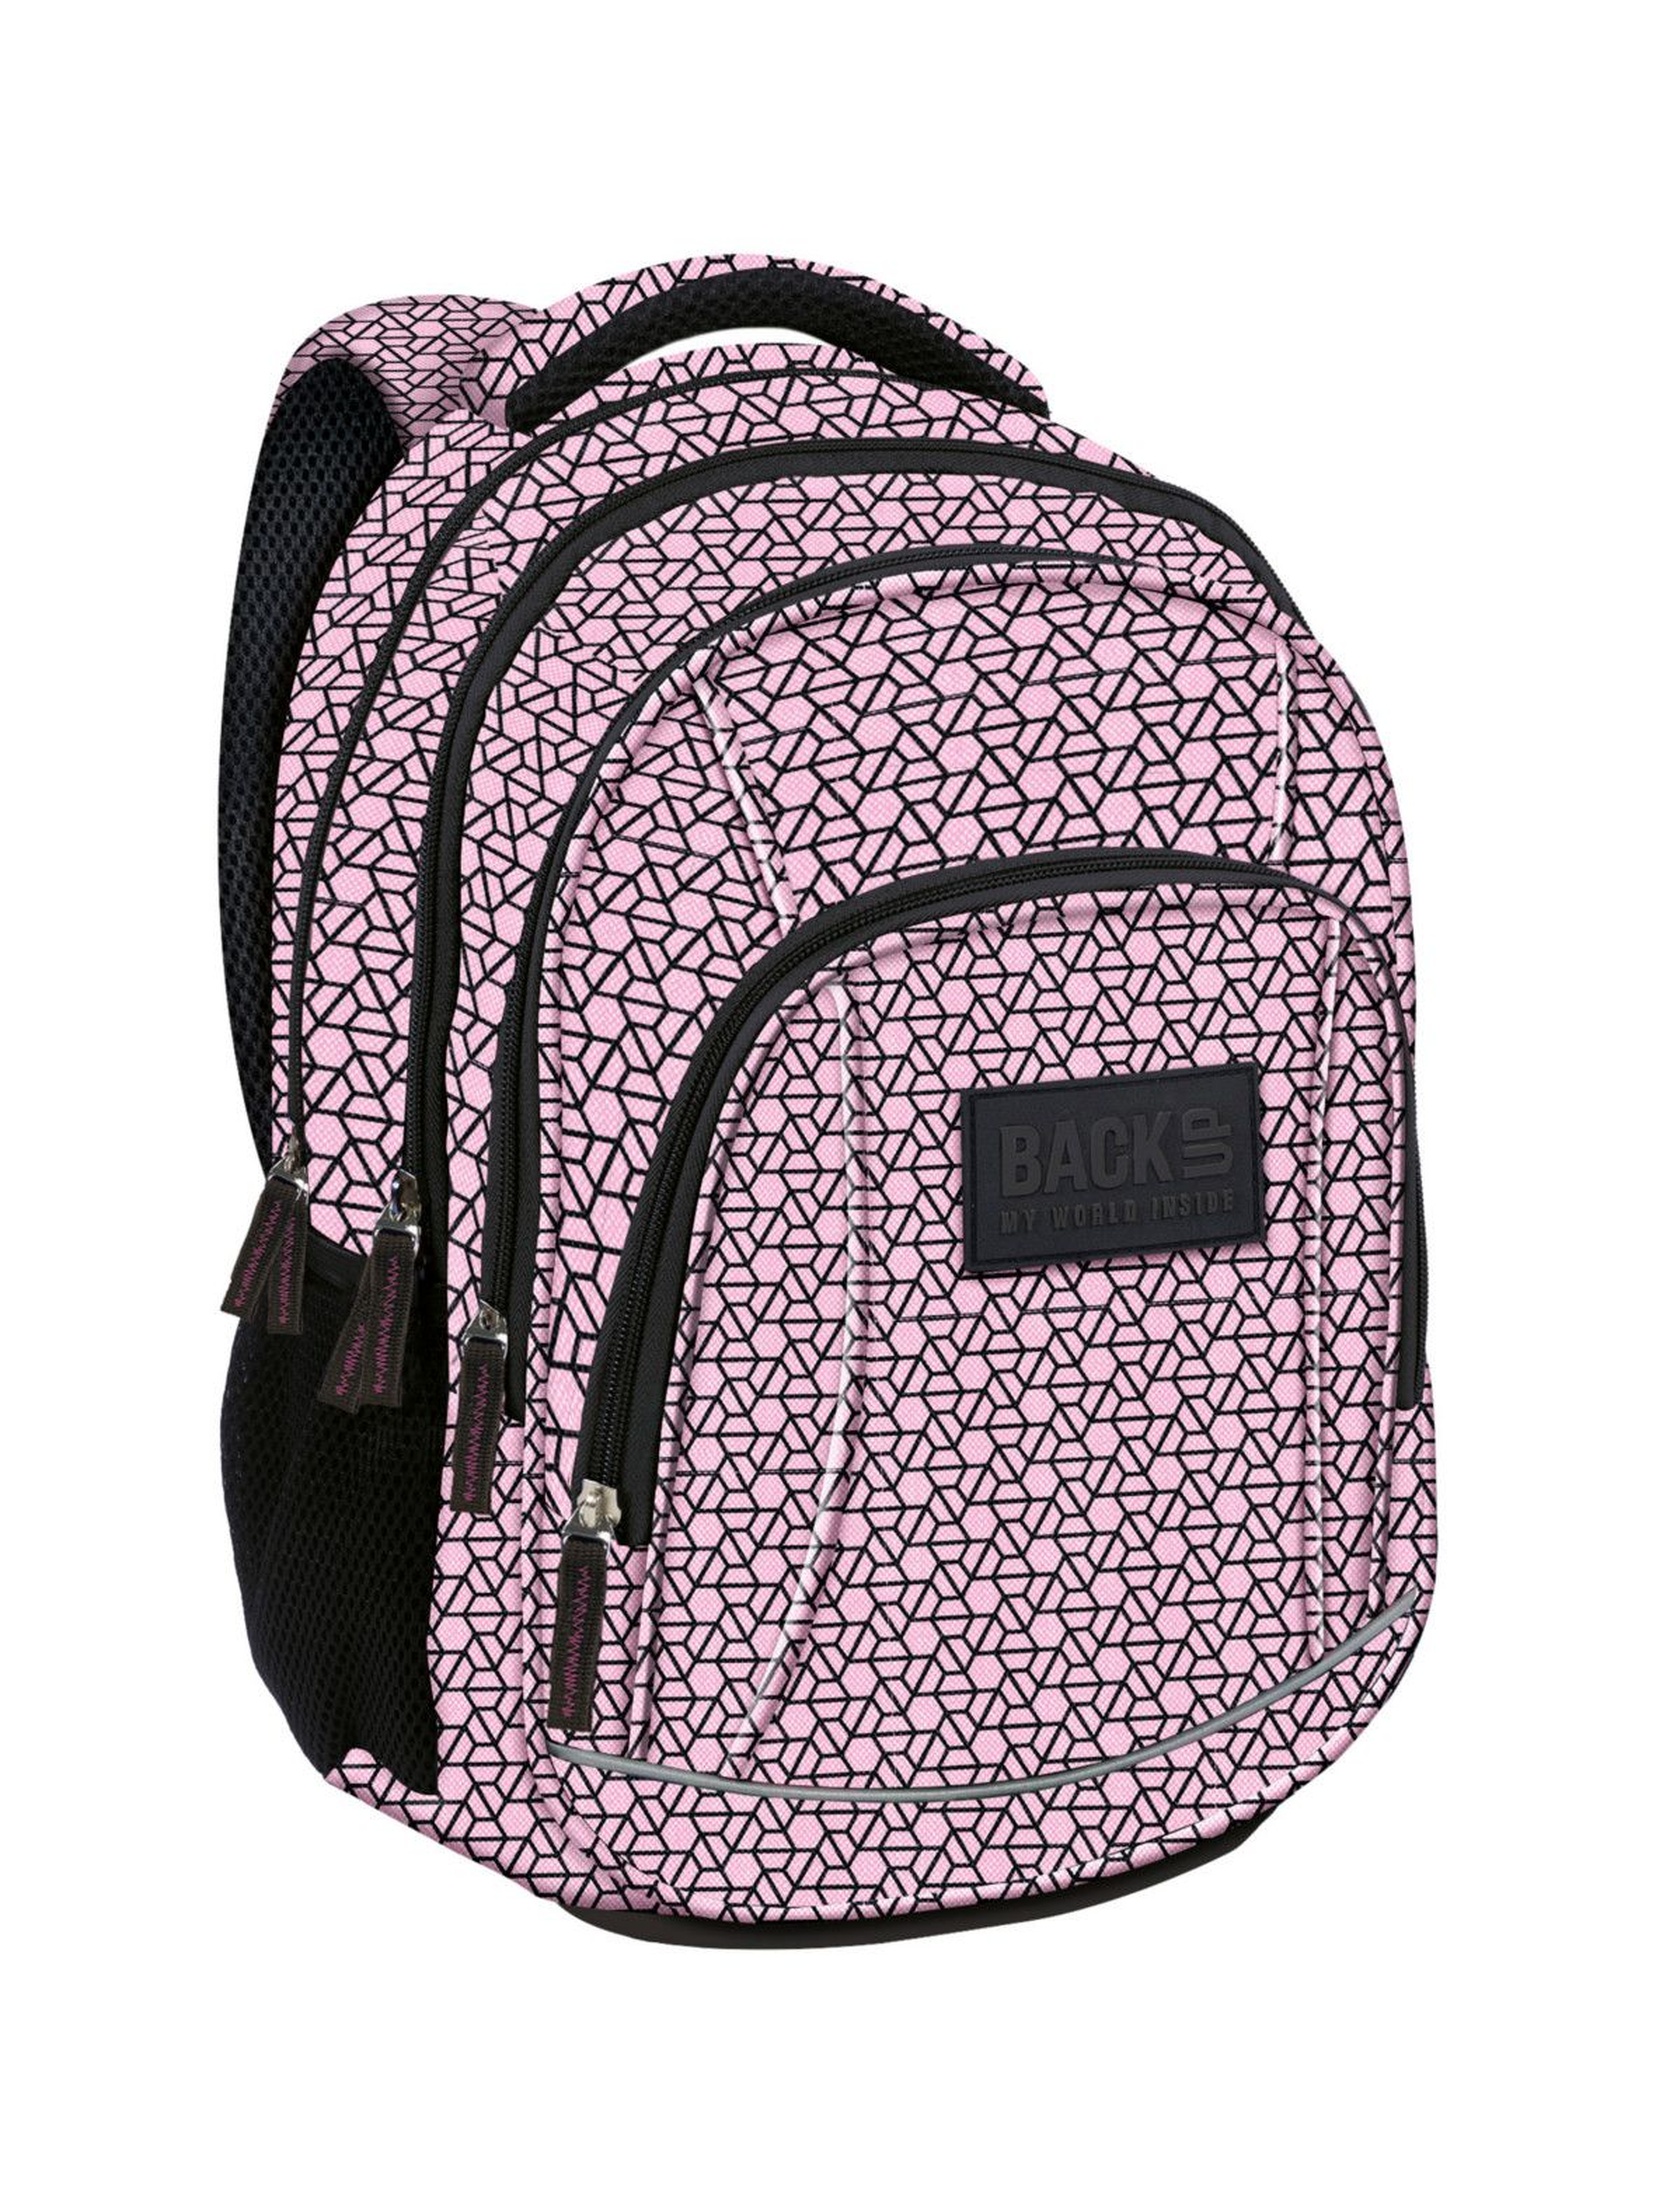 Plecak dziewczęcy różowy w symetryczne wzory- 4komory